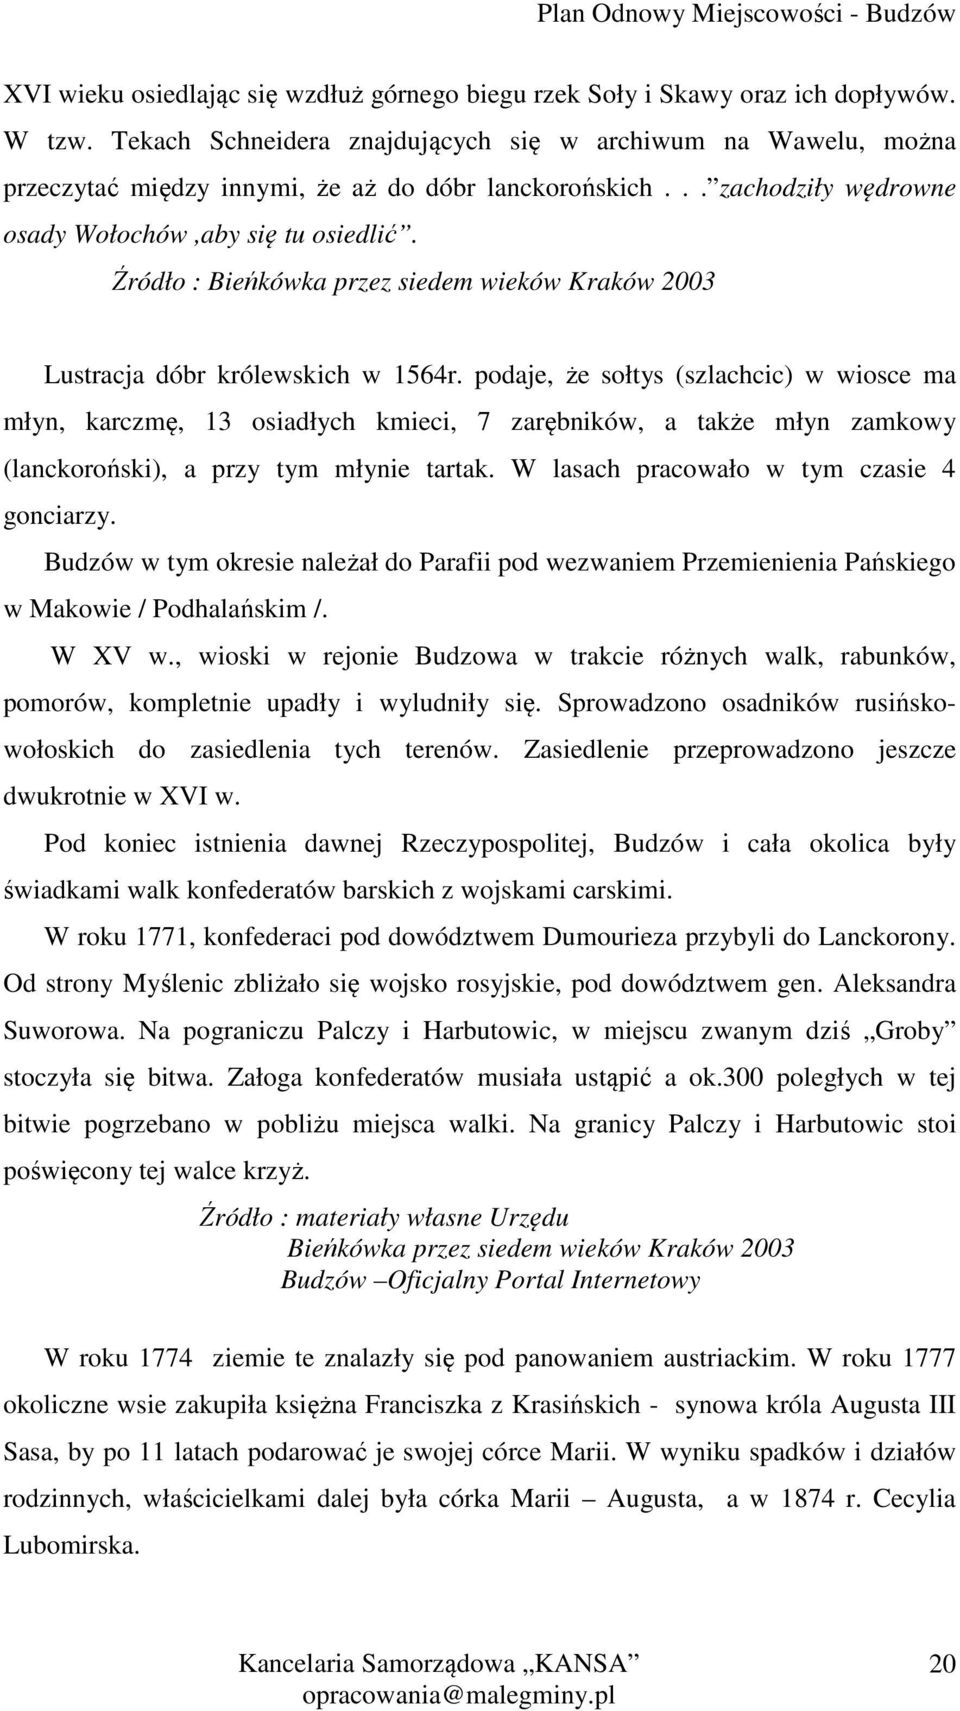 Źródło : Bieńkówka przez siedem wieków Kraków 2003 Lustracja dóbr królewskich w 1564r.